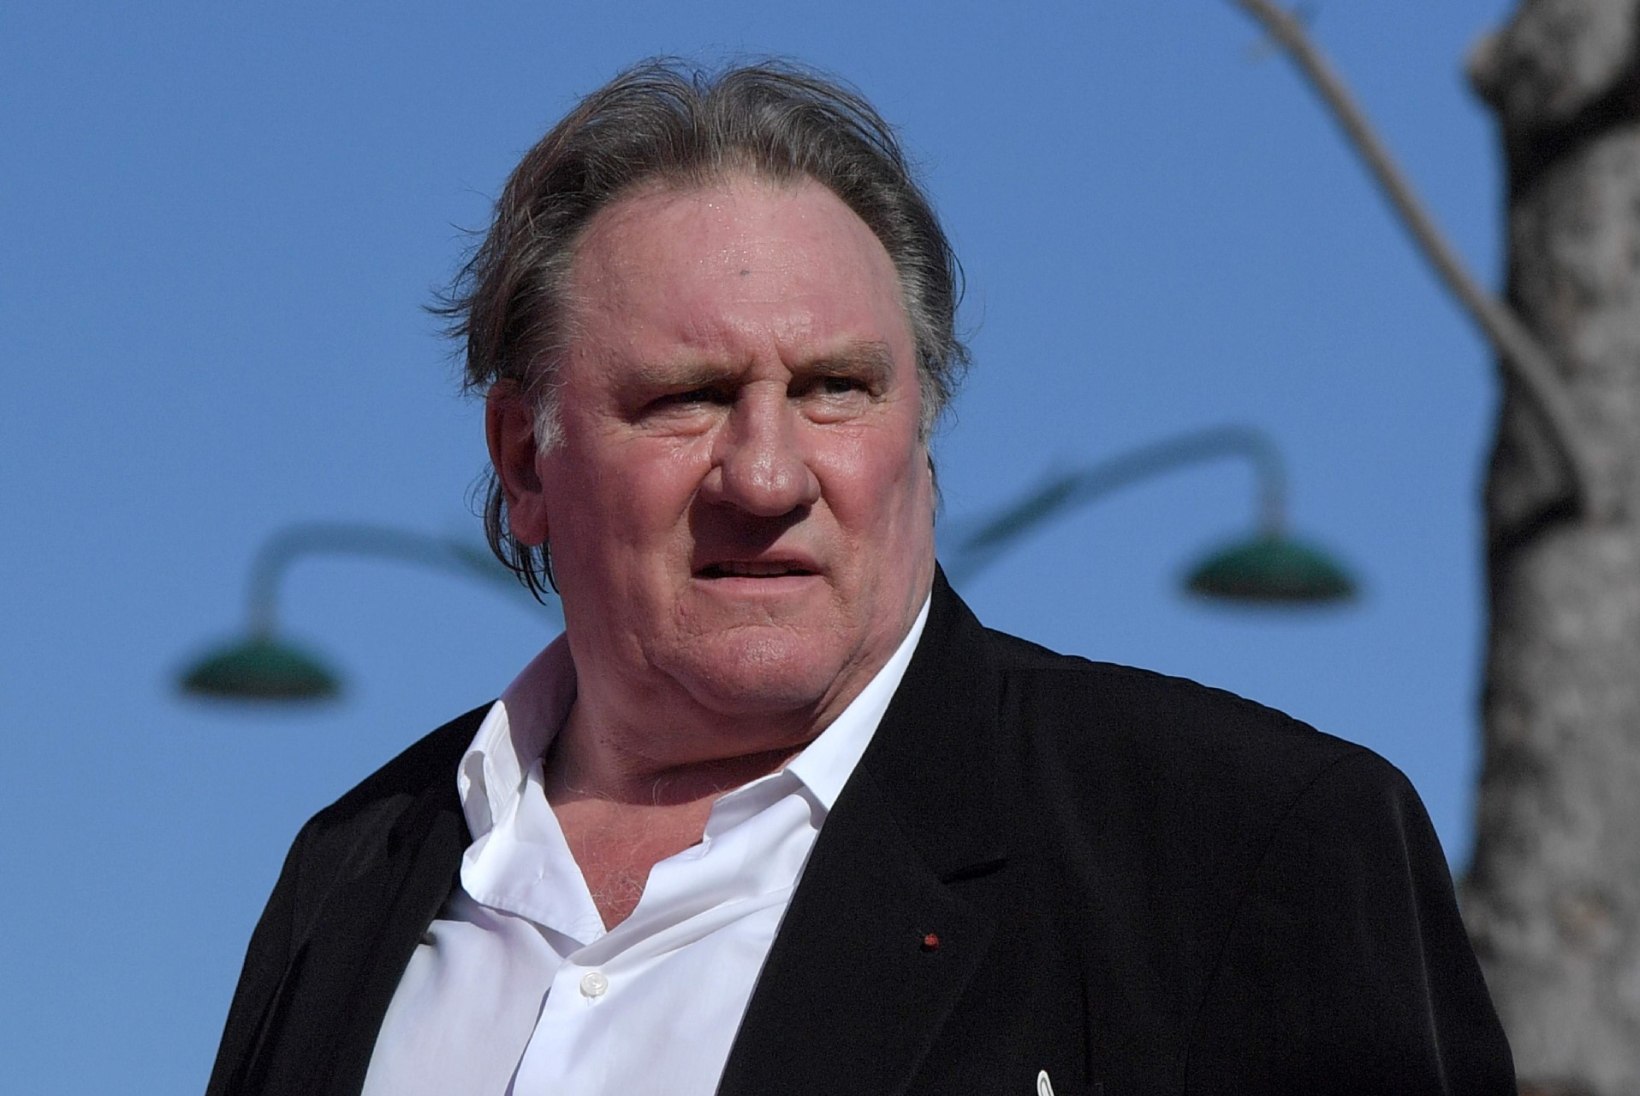 Prantsuse võimud tahavad uuesti uurida filmistaar Depardieu' vägistamissüüdistust